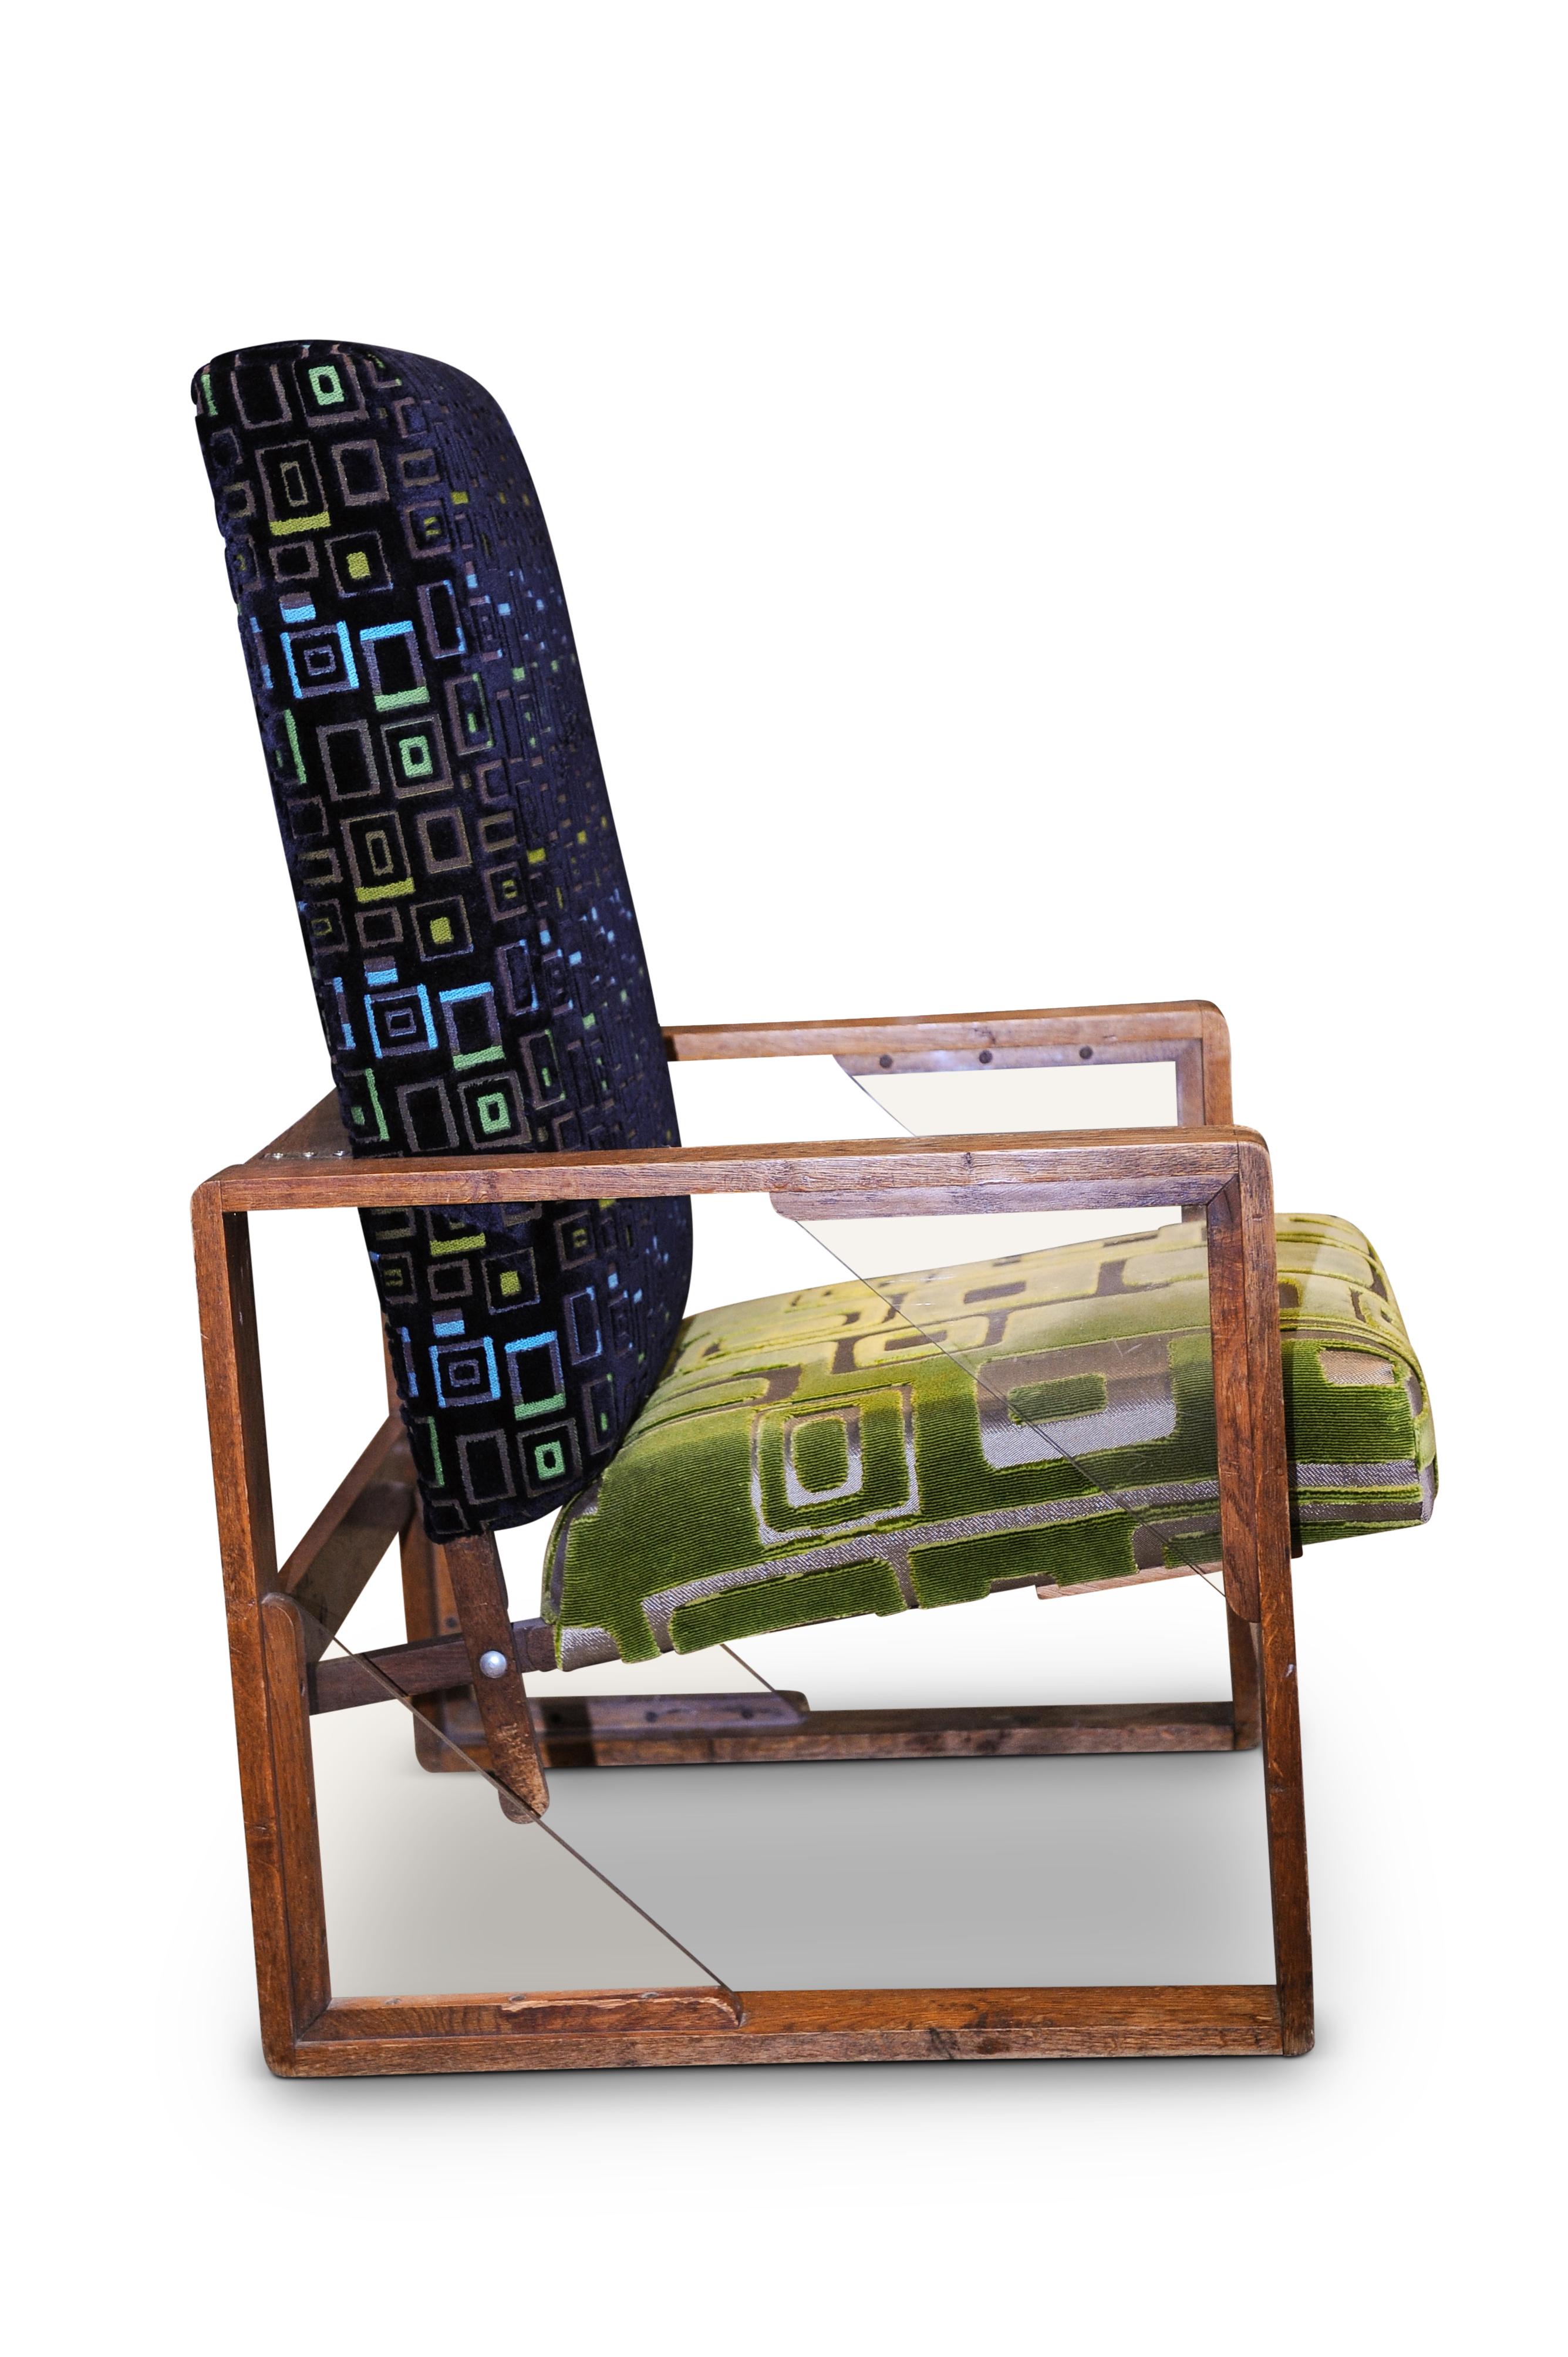 Fauteuil réglable en chêne à structure ouverte Art Déco de The Designers Guild London, avec des encoignures en lucite, tapissé de moquette découpée, années 1920

Provenance : La chaise a été achetée lors de la vente Amanda Eliasch (photographe)